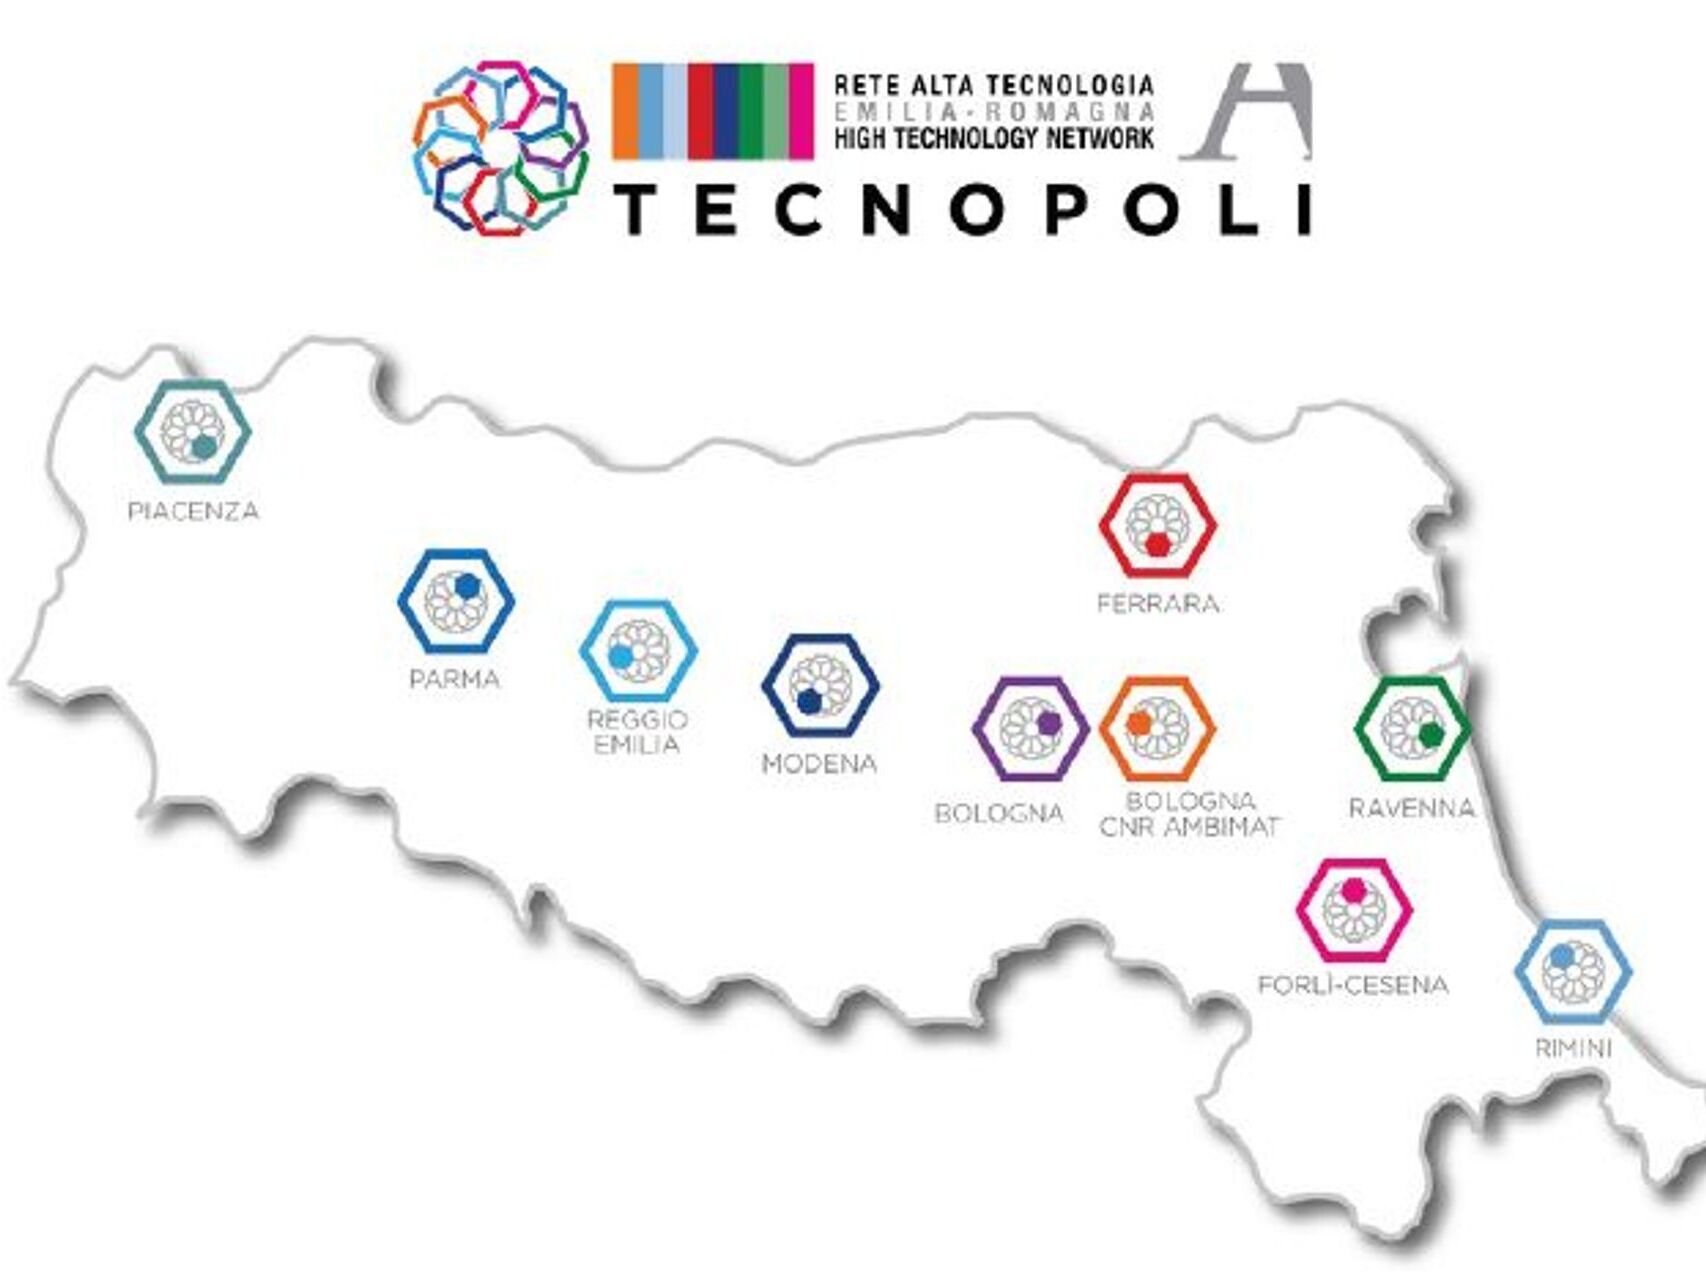 Rrjeti i Teknologjisë së Lartë të Rajonit Emilia-Romagna